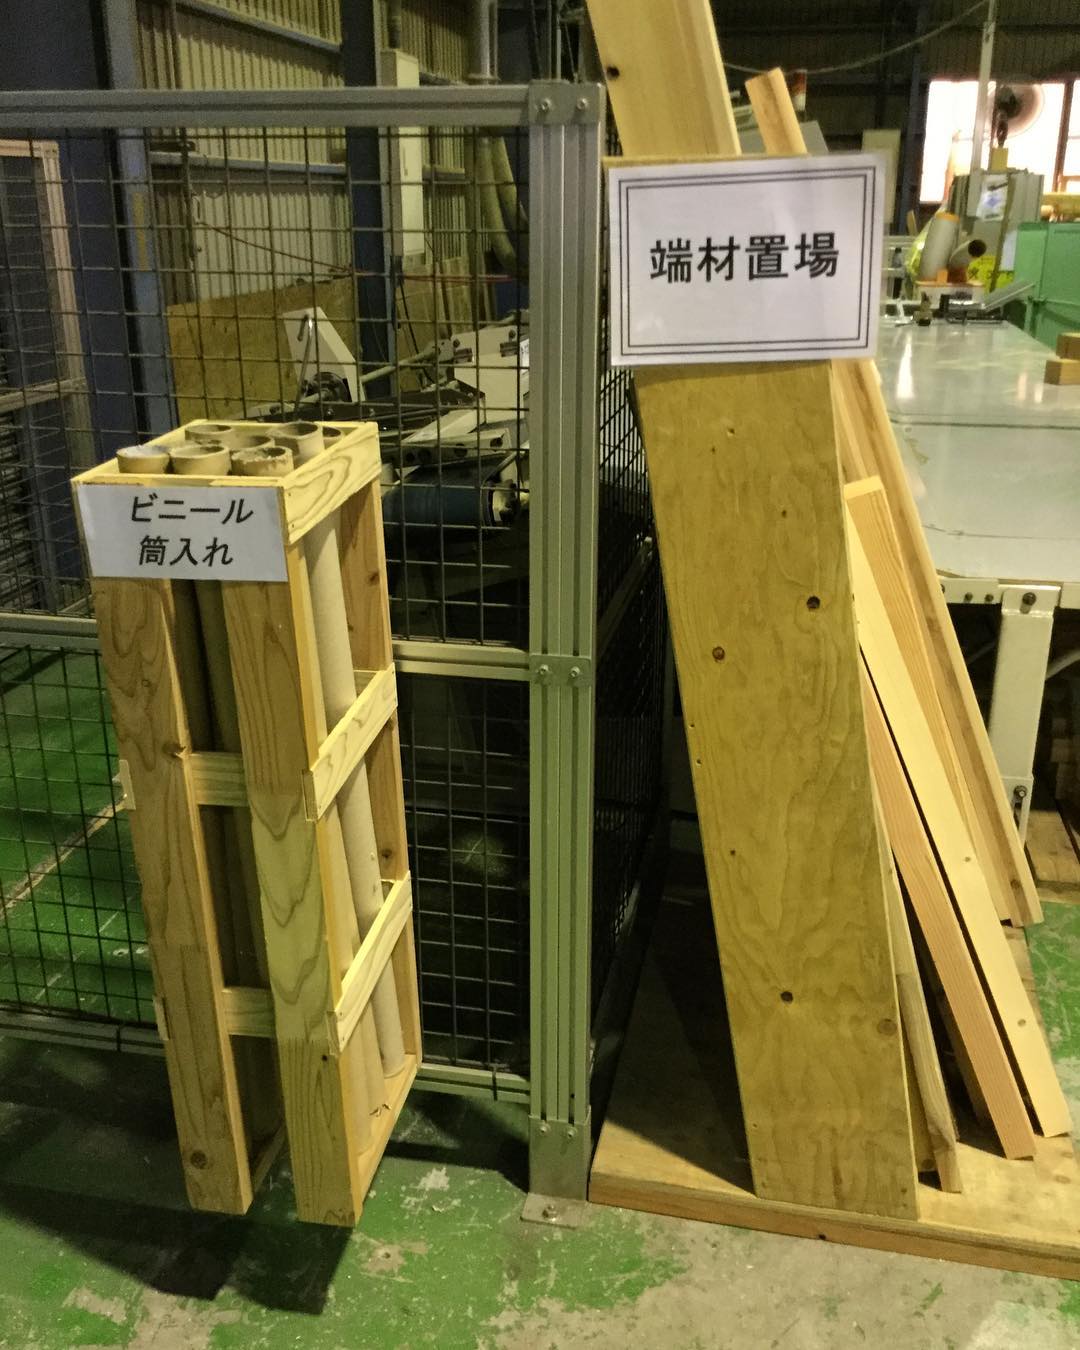 岡山事業所の星島です端材で作ったものシリーズ2です！収納ボックスです。普段捨ててしまうような切れ端がこのように生まれ変わりました。#さんもく工業#木材#木#端材#収納 – Instagram